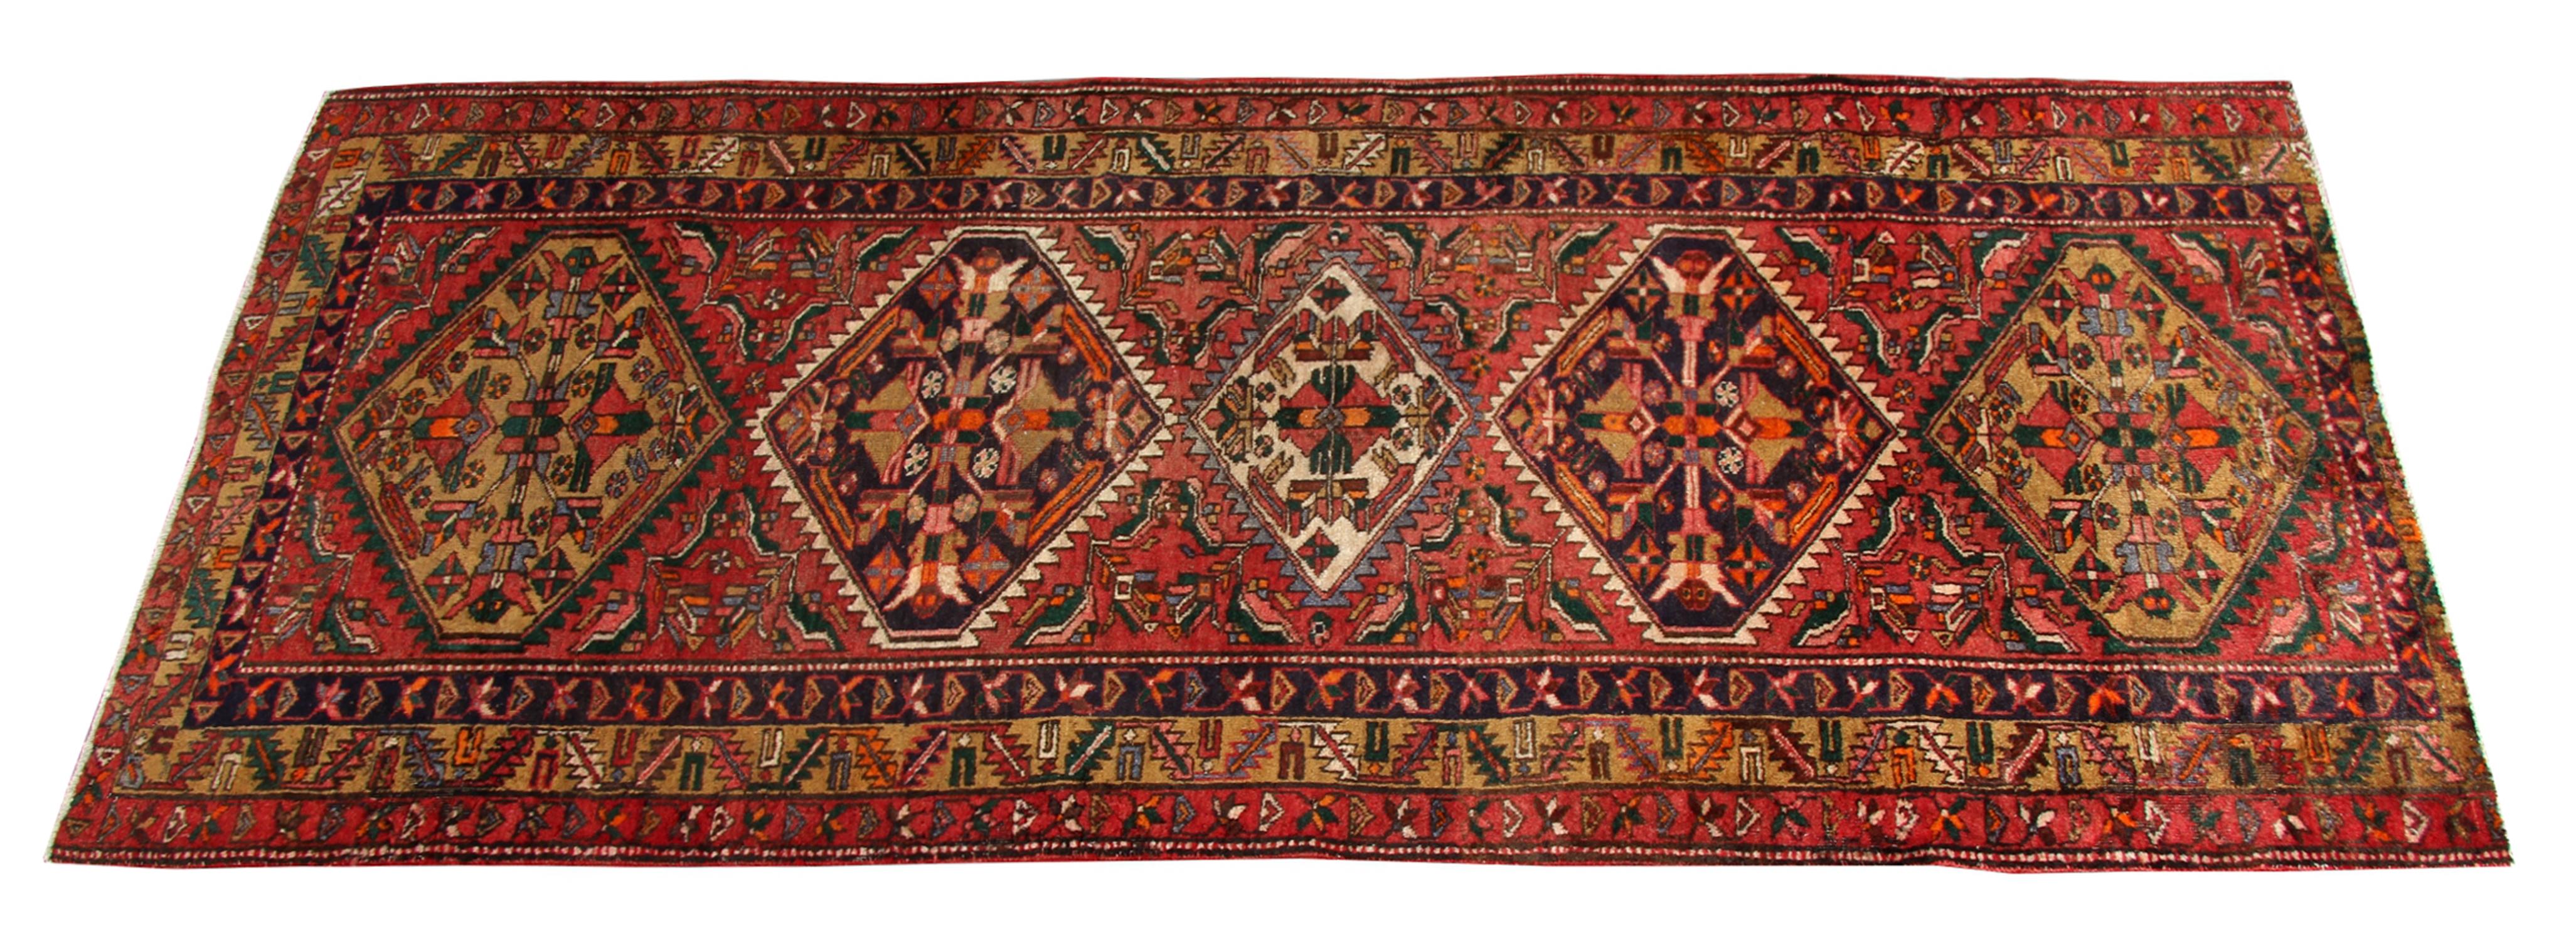 Tribal Vintage Runner Rug Handmade Wool Geometric Red Carpet